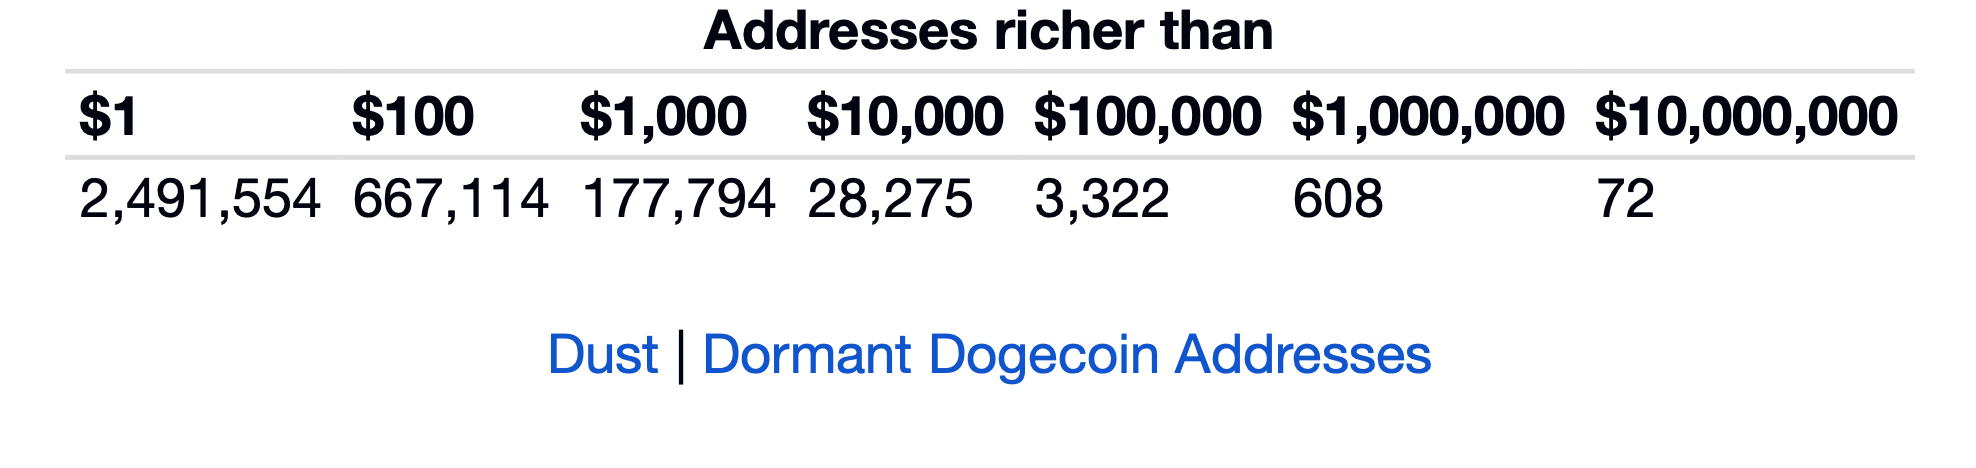 Сколько существует Биткоин-миллионеров? Распределение богатства среди Dogecoin-адресов. Фото.